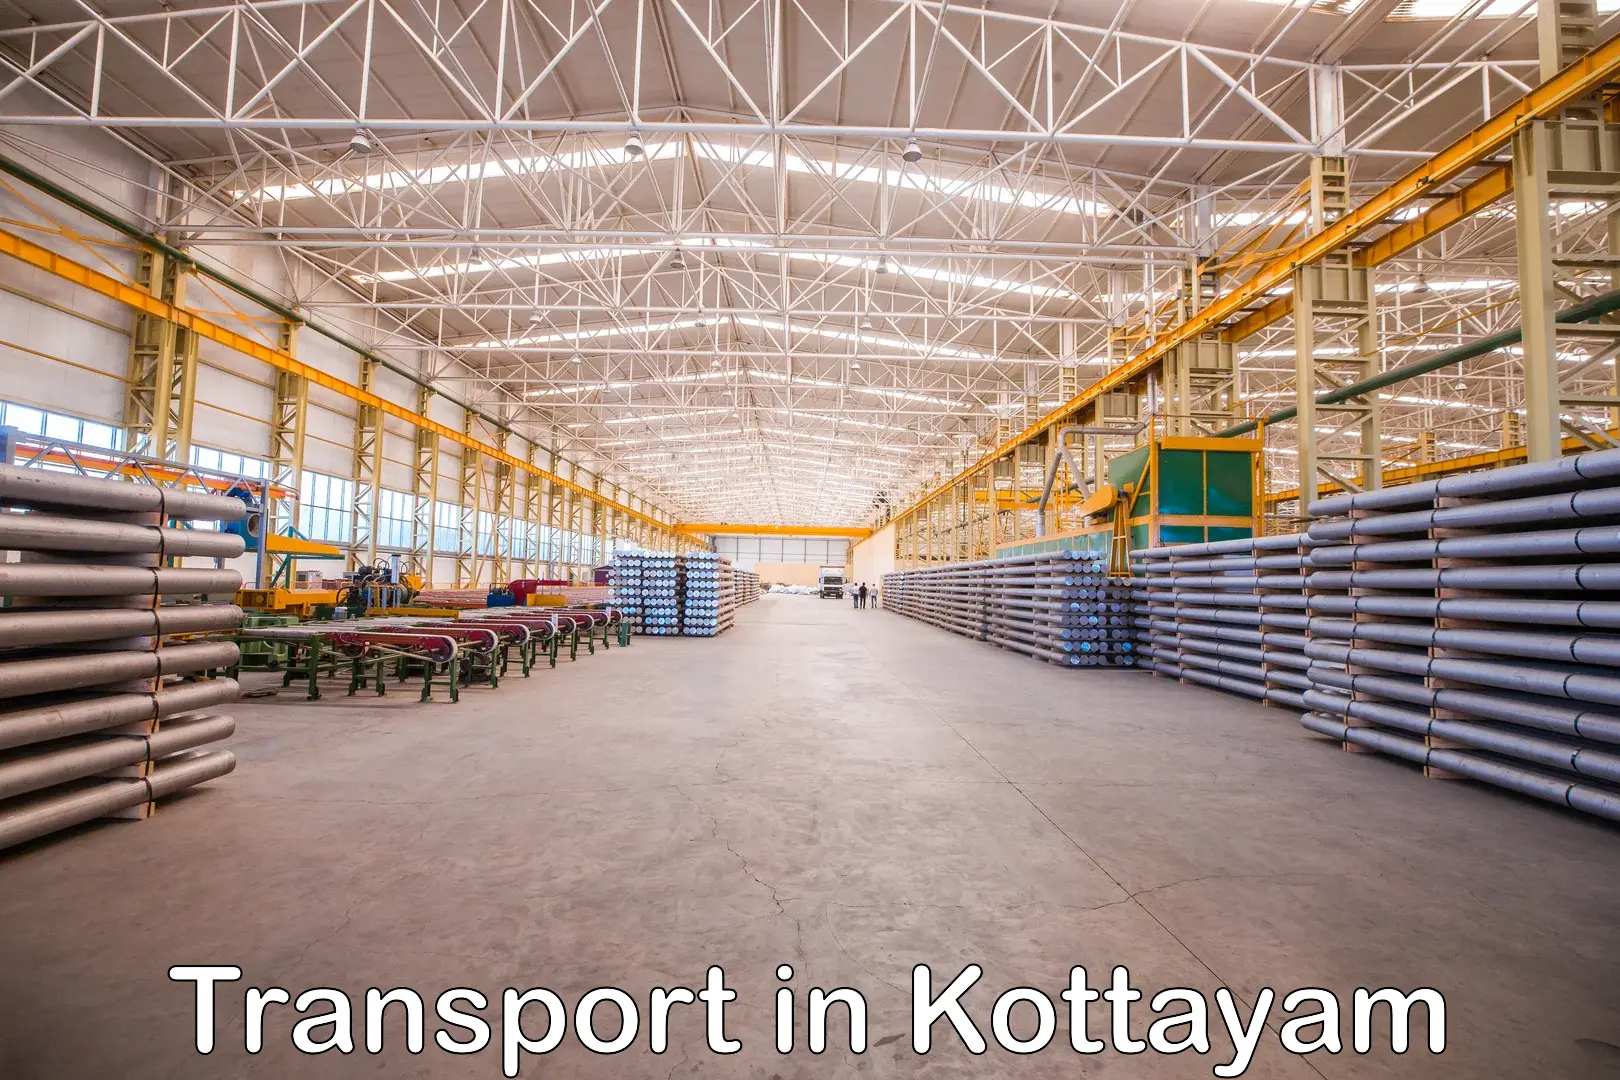 International cargo transportation services in Kottayam